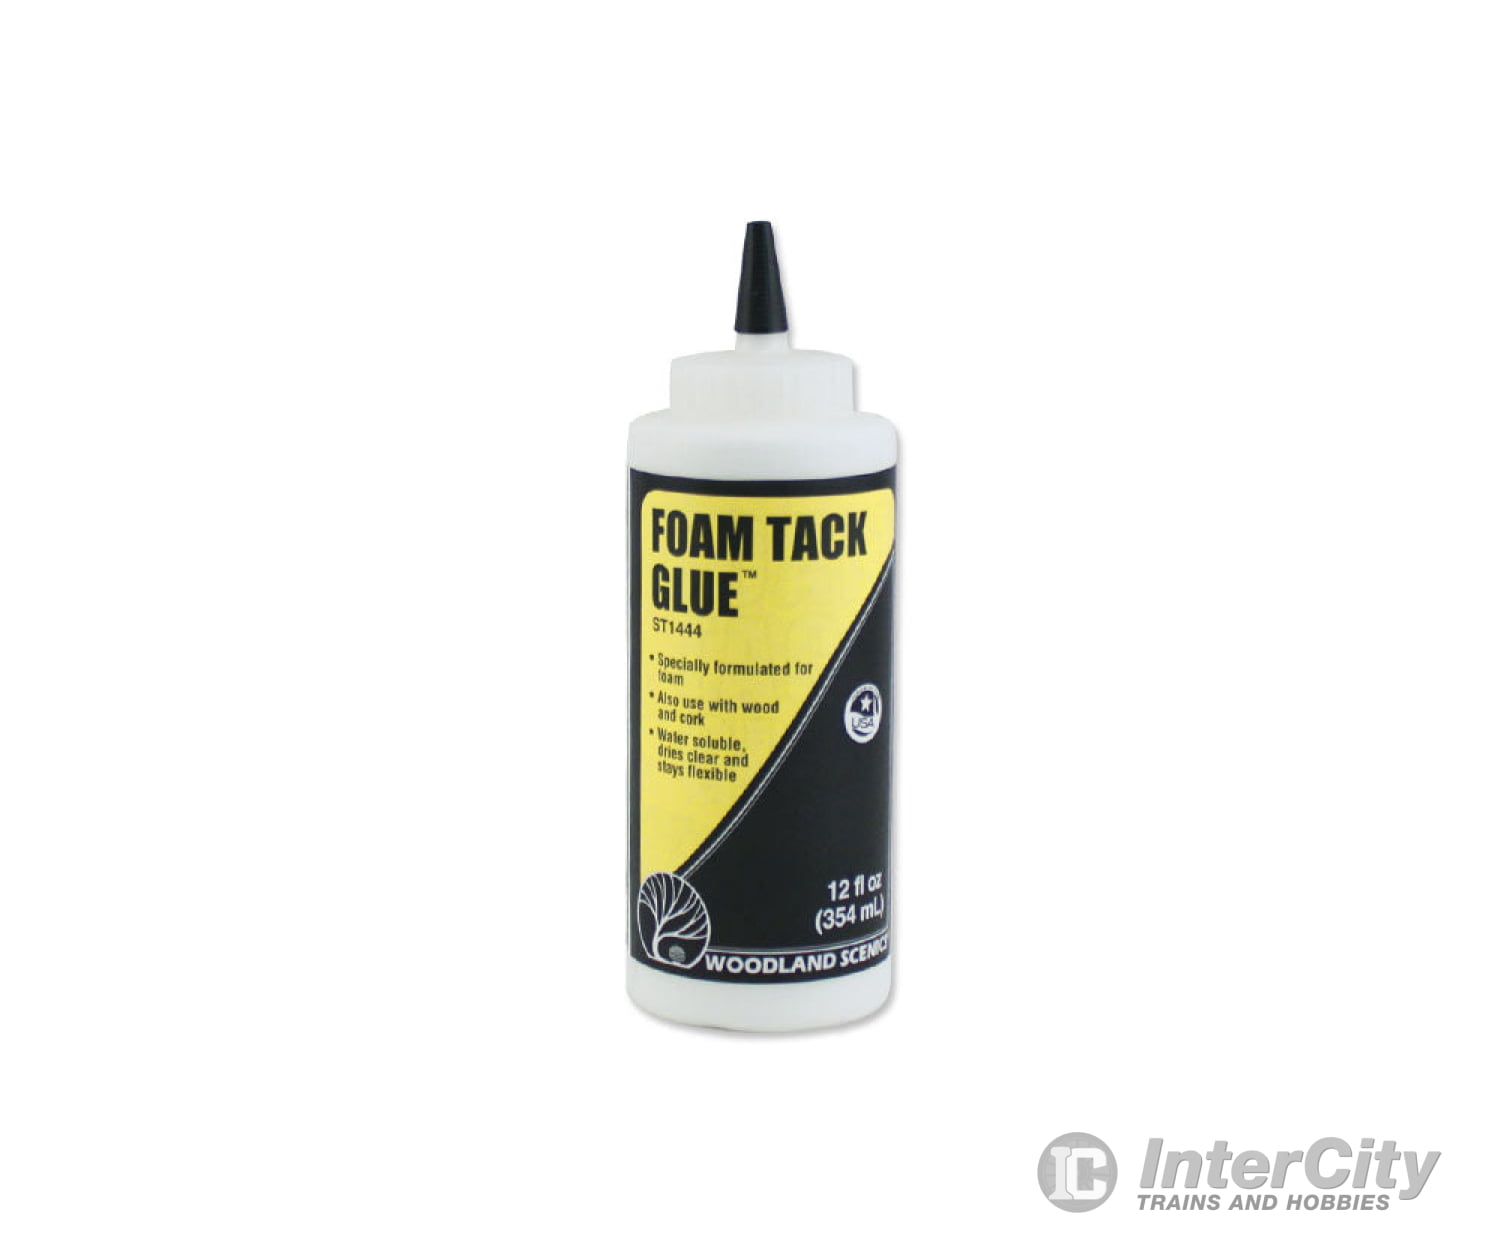 Woodland Scenics 1444 Foam Tack Glue ** Freeze Warning Glues & Adhesives